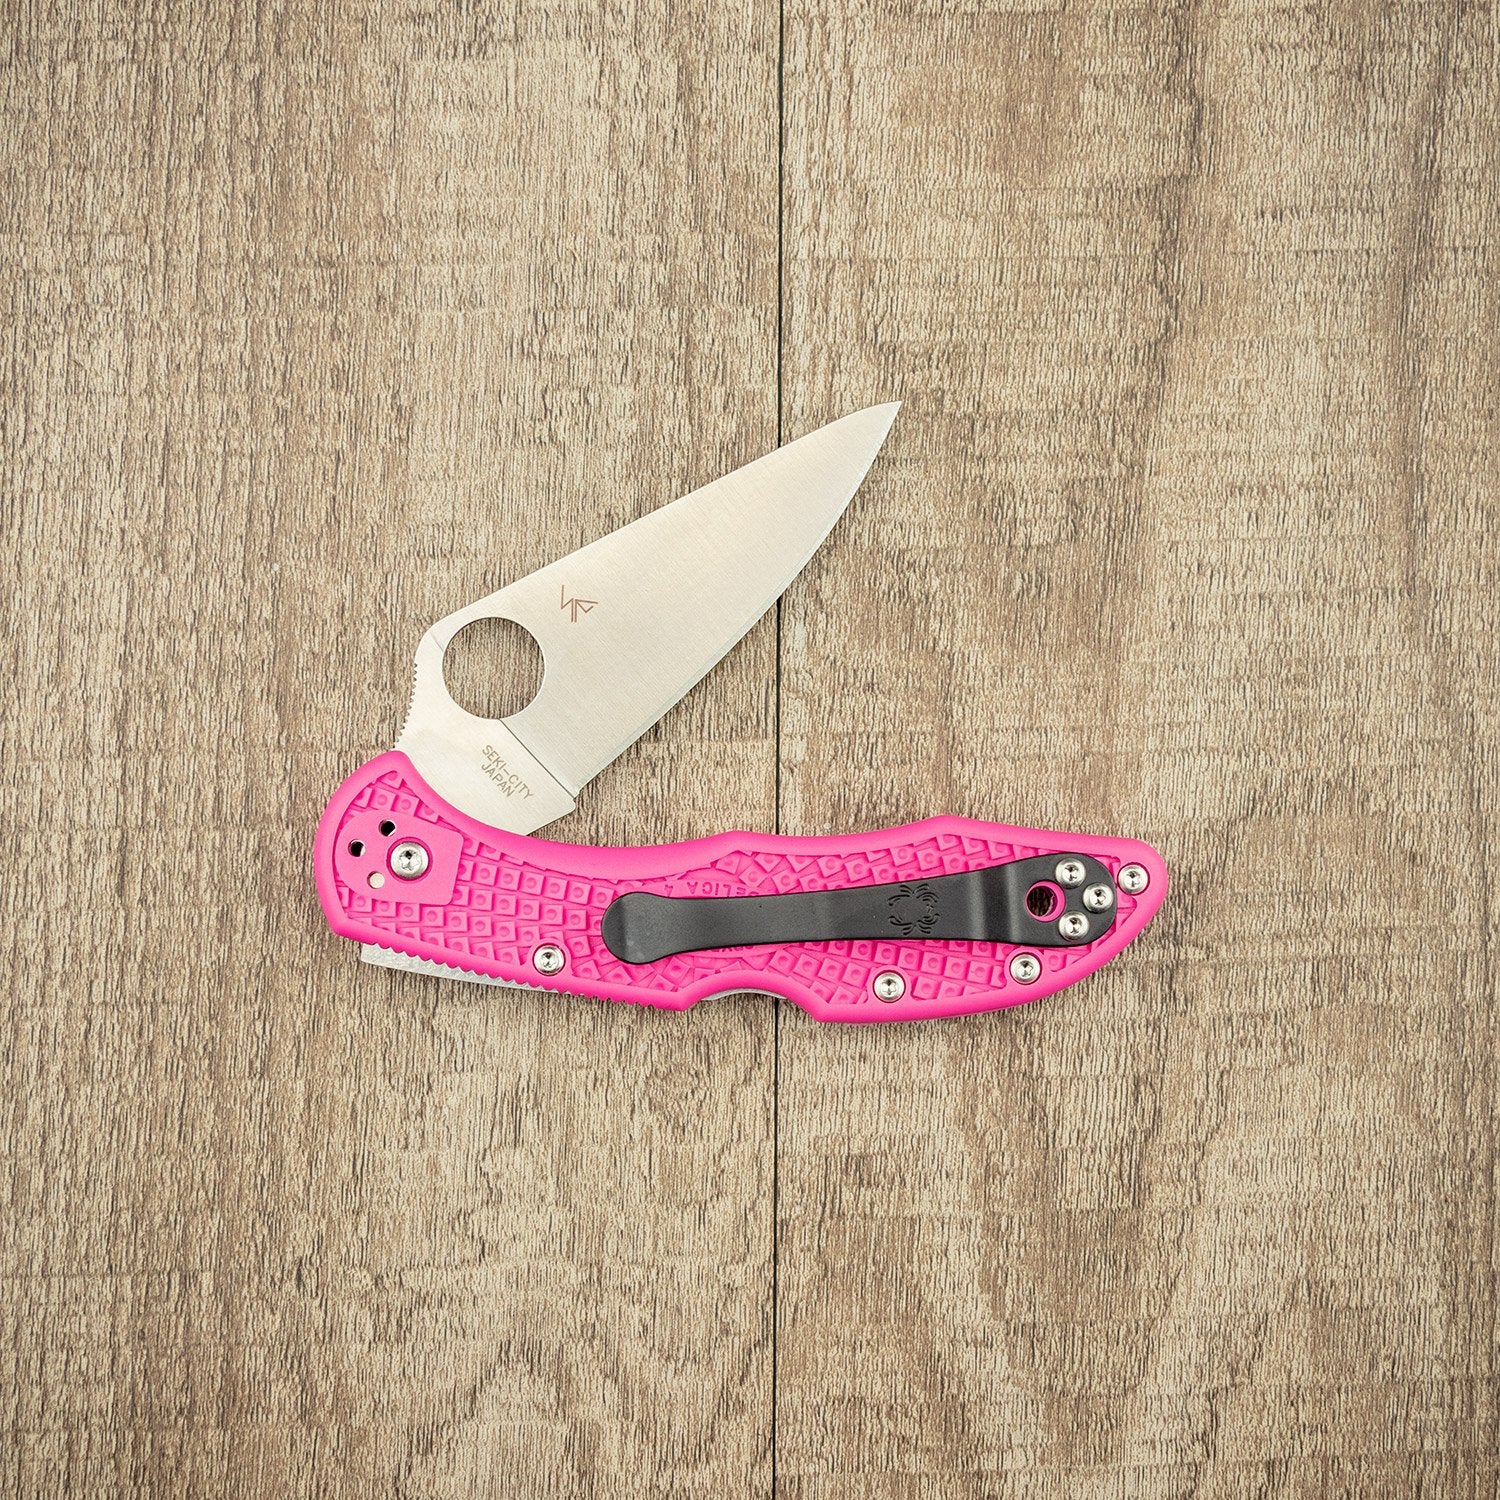 Spyderco Delica 4 Lightweight Pink Folding Knife